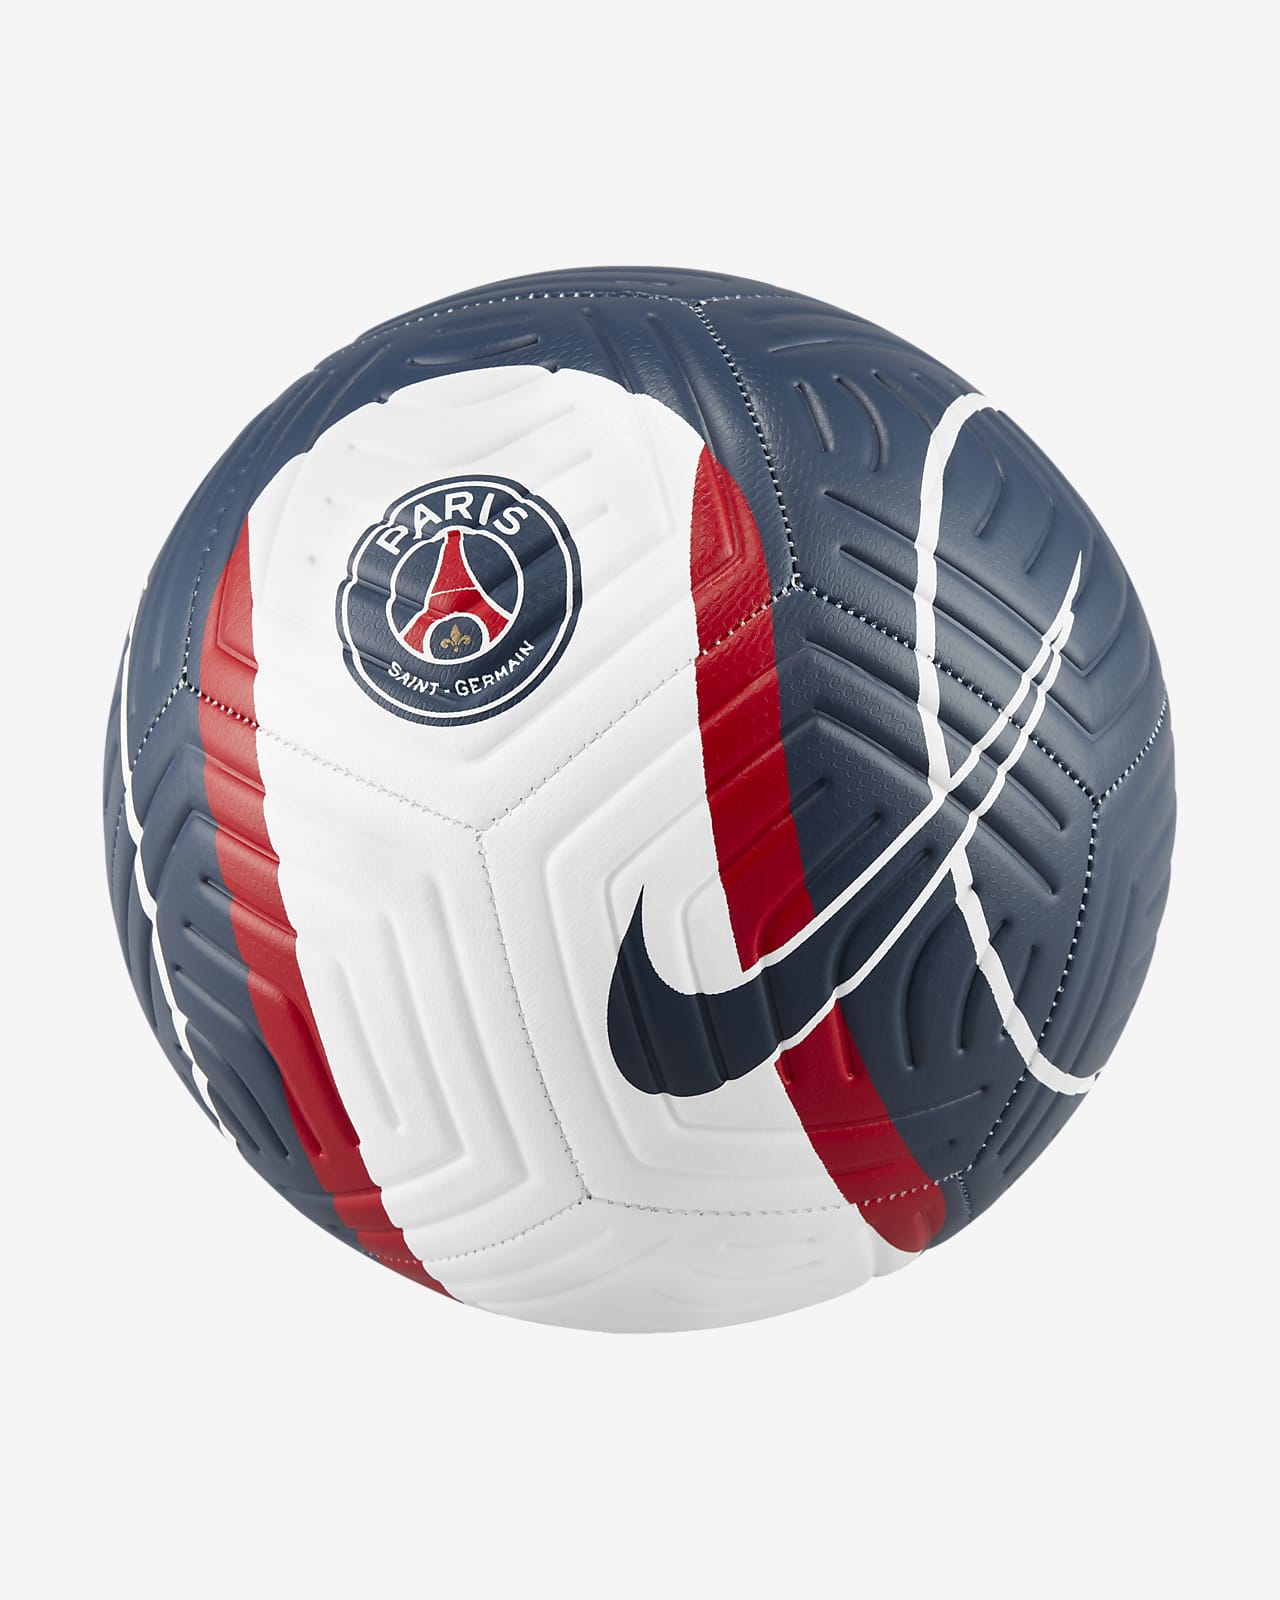 Nike公式 パリ サンジェルマン ストライク サッカーボール オンラインストア 通販サイト